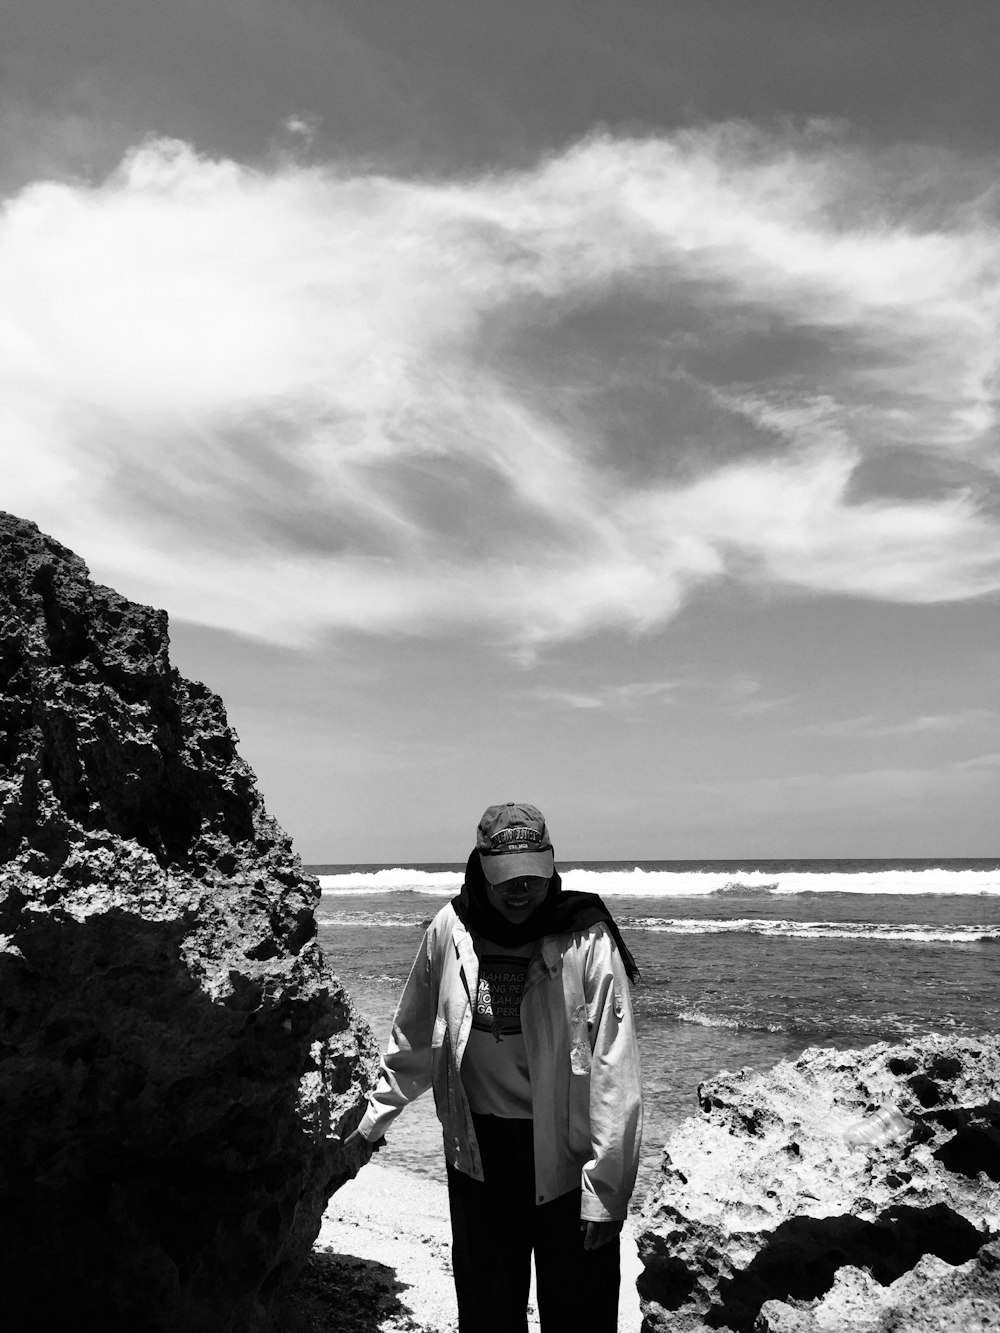 Una mujer parada en una playa rocosa junto al océano